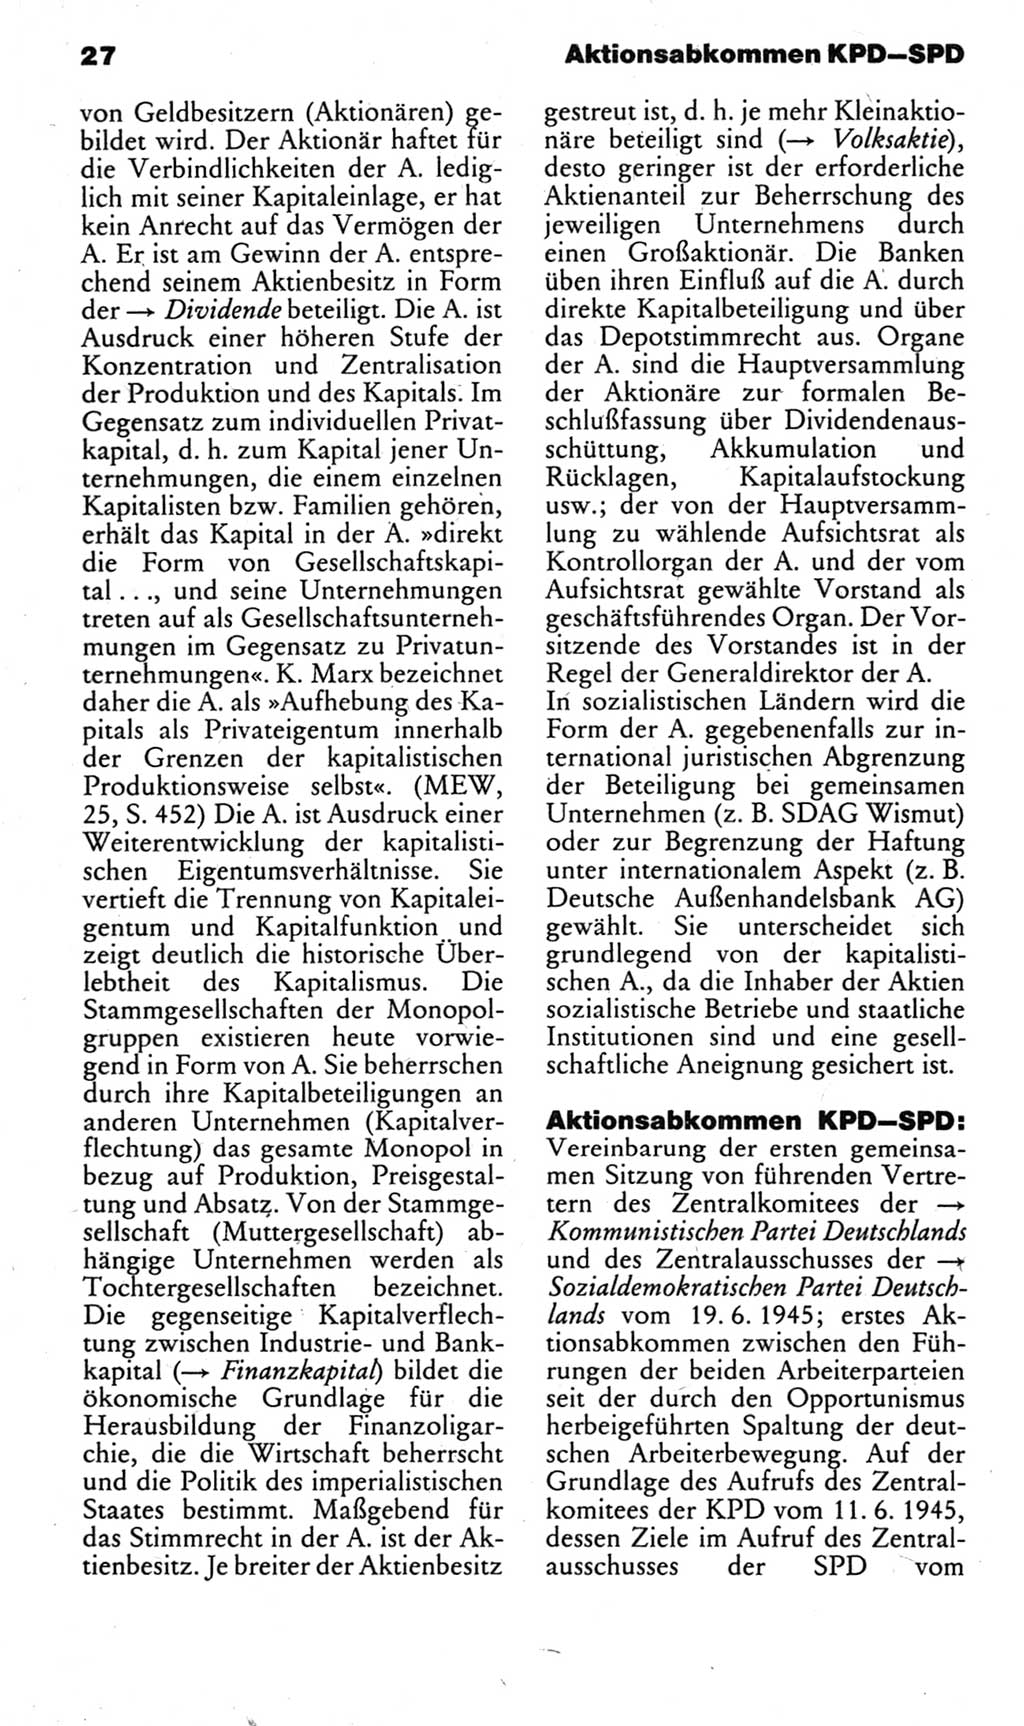 Kleines politisches Wörterbuch [Deutsche Demokratische Republik (DDR)] 1983, Seite 27 (Kl. pol. Wb. DDR 1983, S. 27)